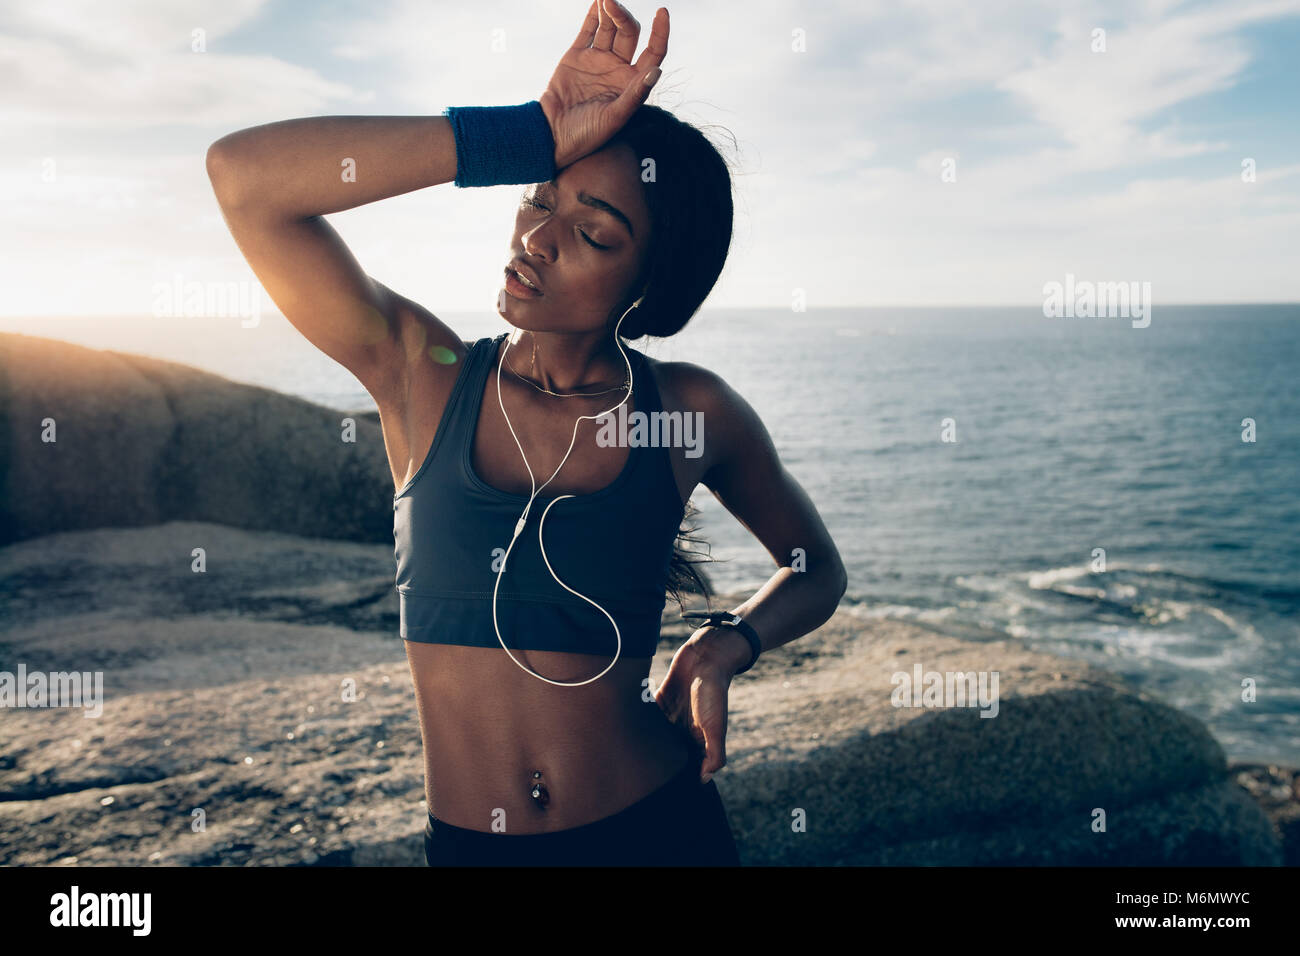 Donna Fitness cerca stanchi dopo un intenso allenamento fisico. Sportive in piedi sopra le rocce in spiaggia con la mano sulla testa. Foto Stock